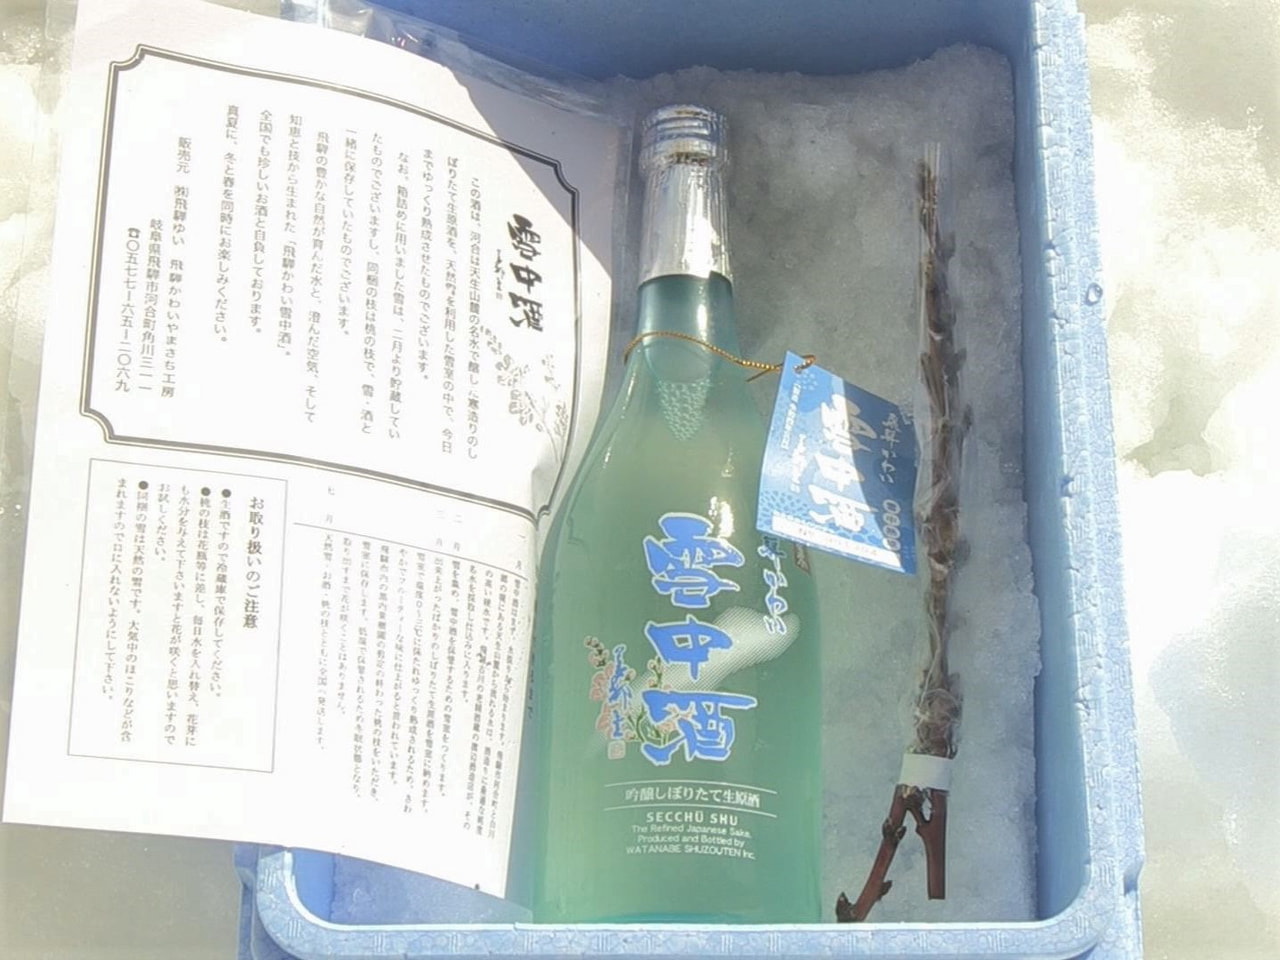 雪室の中で熟成させた酒「雪中酒」と、「雪だるま」の出荷作業が飛騨市ではじまりまし...